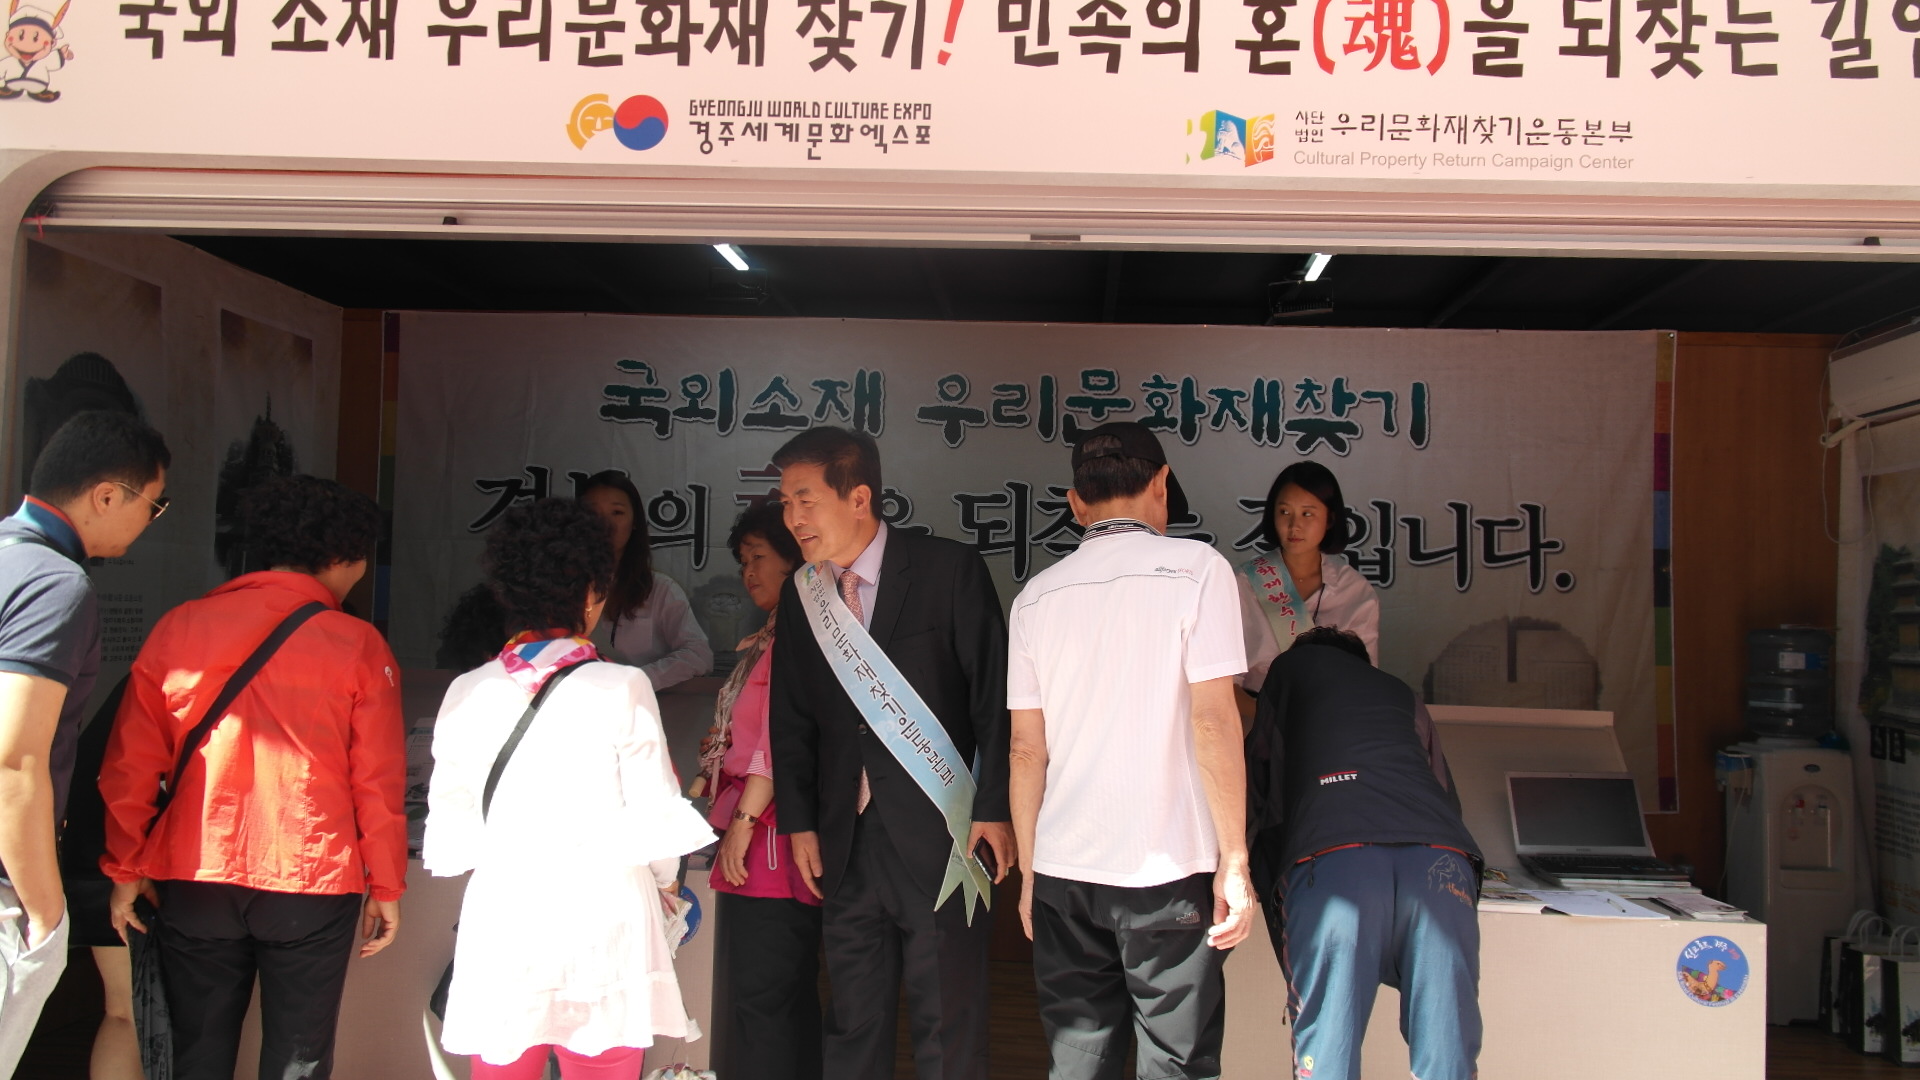 『실크로드 경주 2015』행사장에서 국외반출 문화재환수 홍보 활동